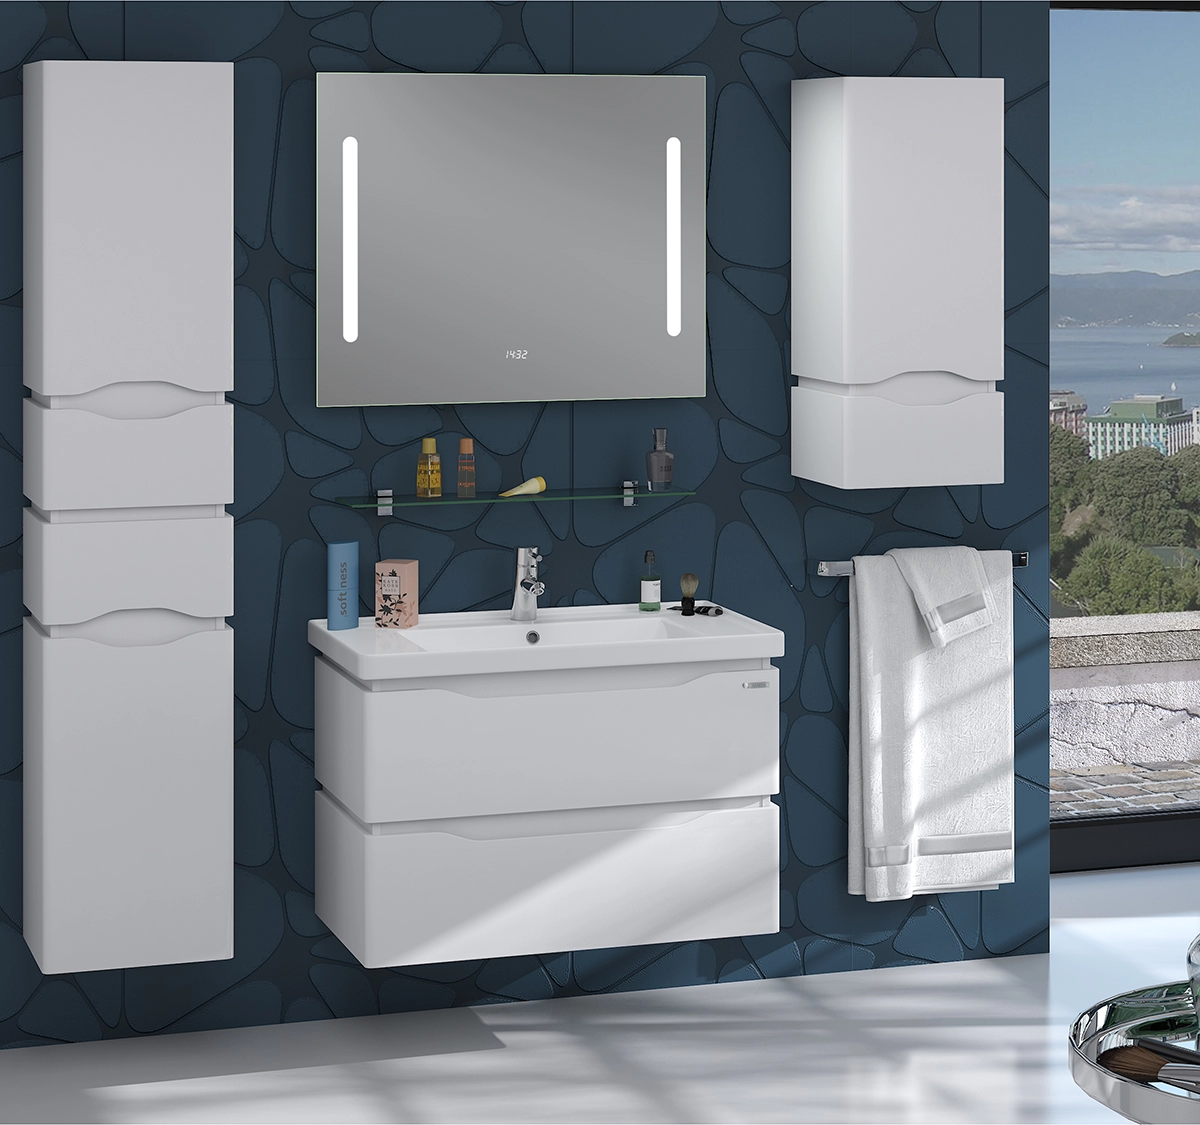 В интерьере гарнитур для ванной комнаты 70 см с прямоугольной раковиной санверк alessa white air 25466-25535-25477 №1